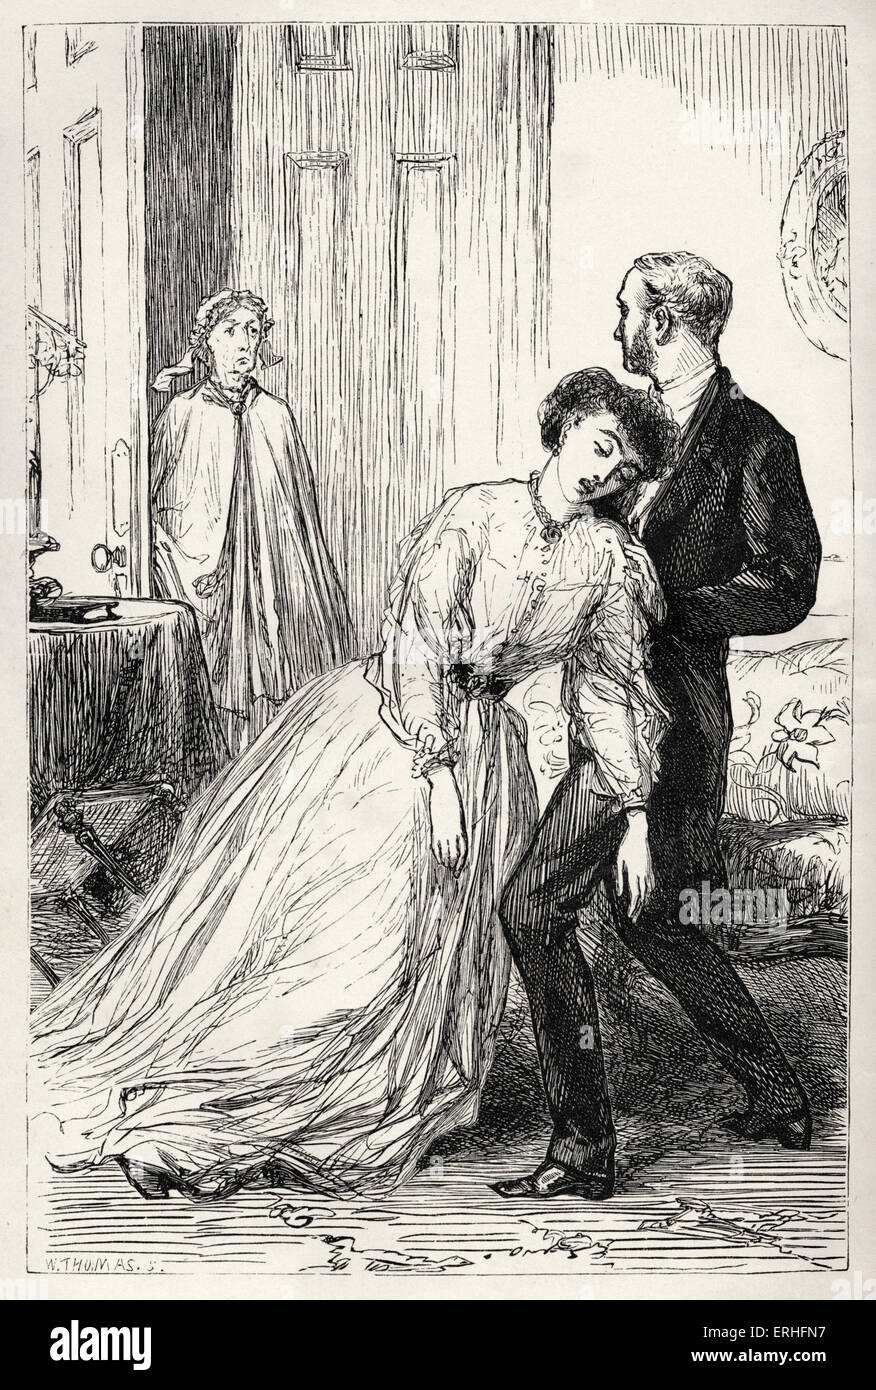 Anthony Trollope, beschriftet die letzten Chronik von Barset - Illustration "Was ist es, die ich sehe?" von 1867 Originalausgabe. Stockfoto